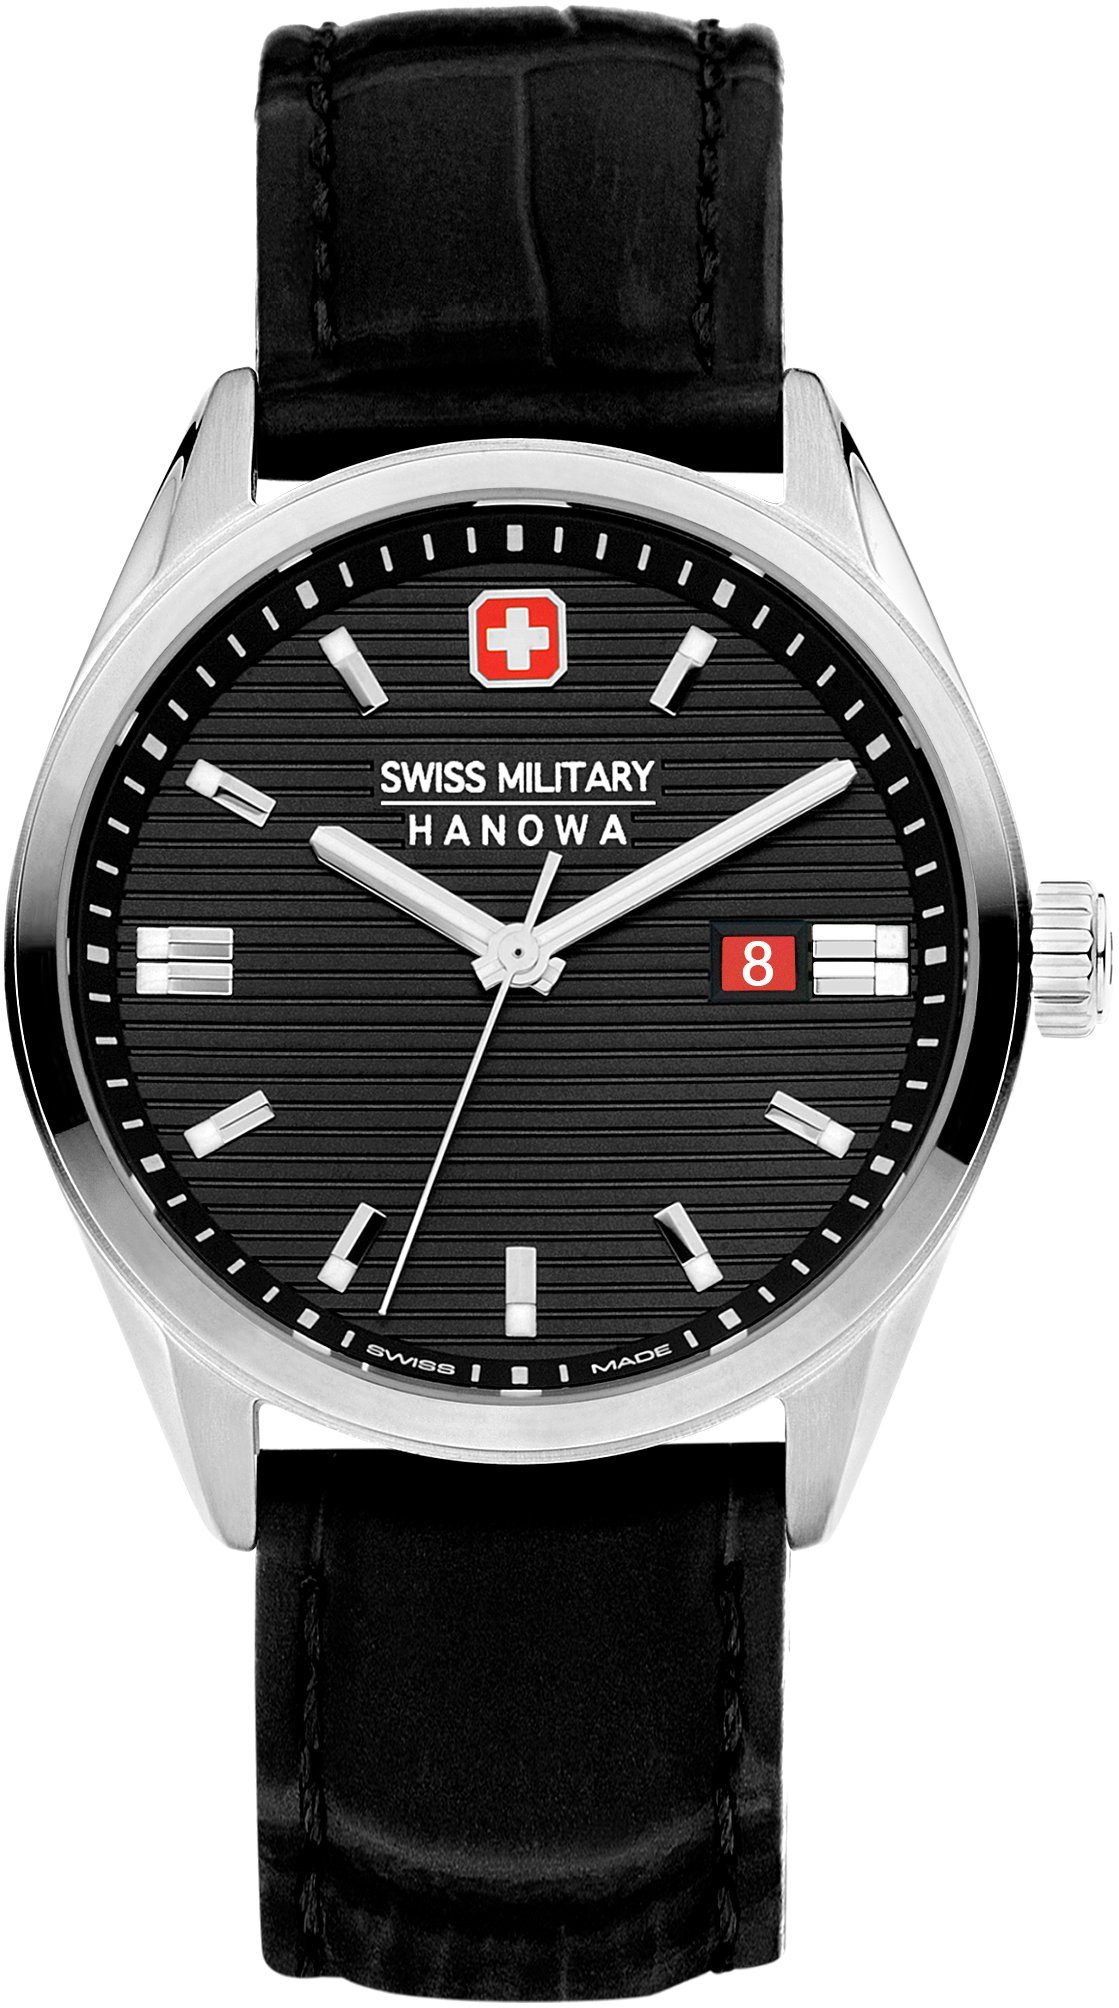 Hervorragend Swiss Hanowa ROADRUNNER, Schweizer SMWGB2200104 Schwarz Military Uhr